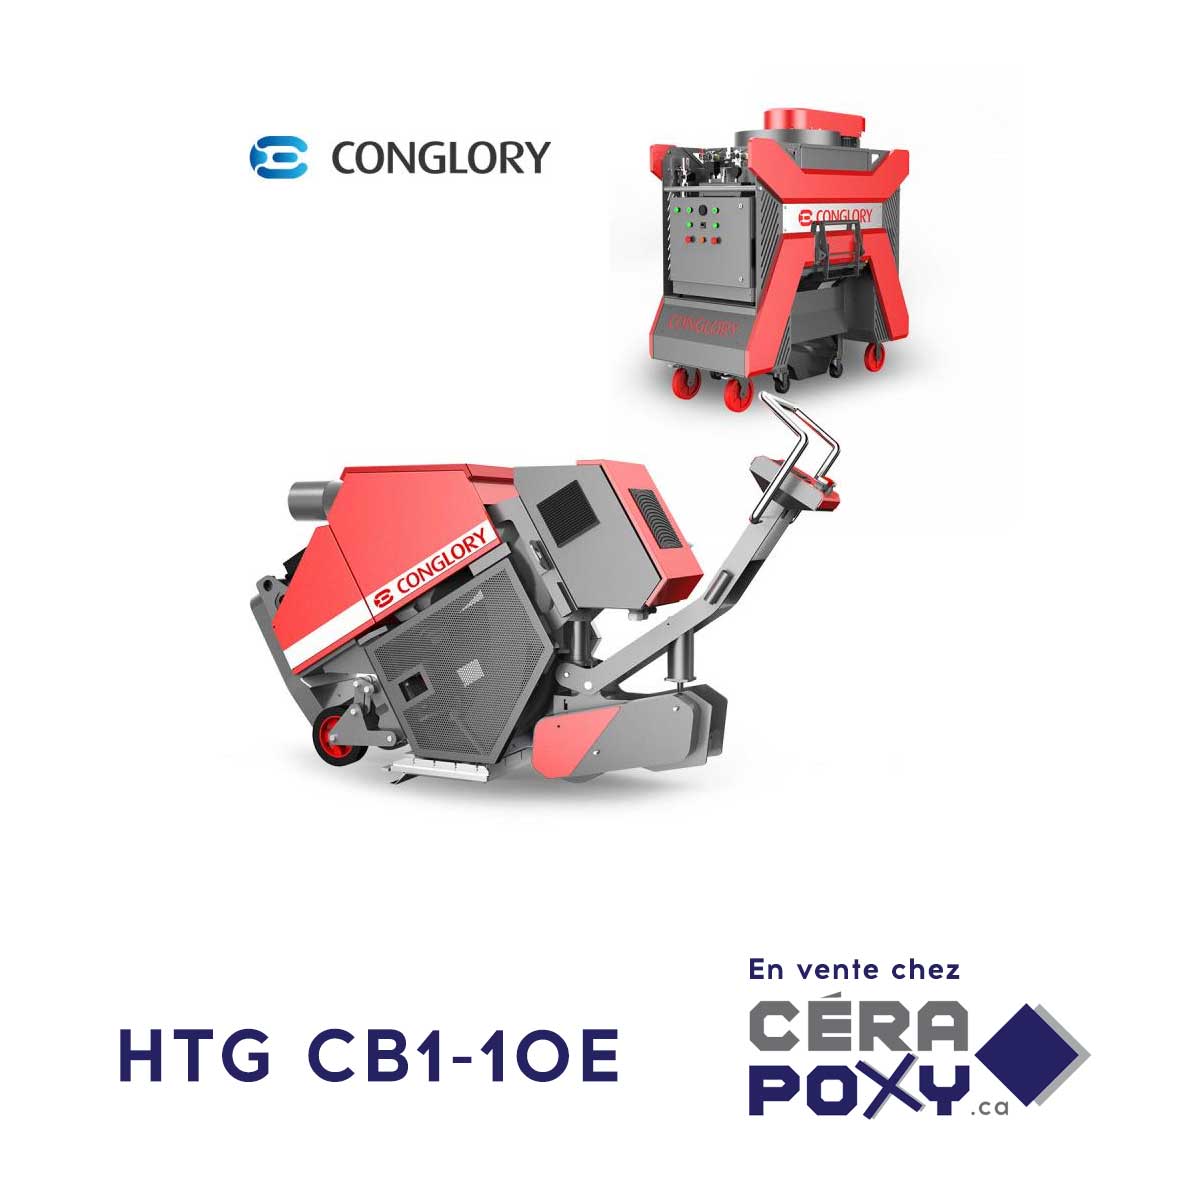 Machine de grenaillage (shot blasting) et aspirateur HTG Conglory CB1-10E